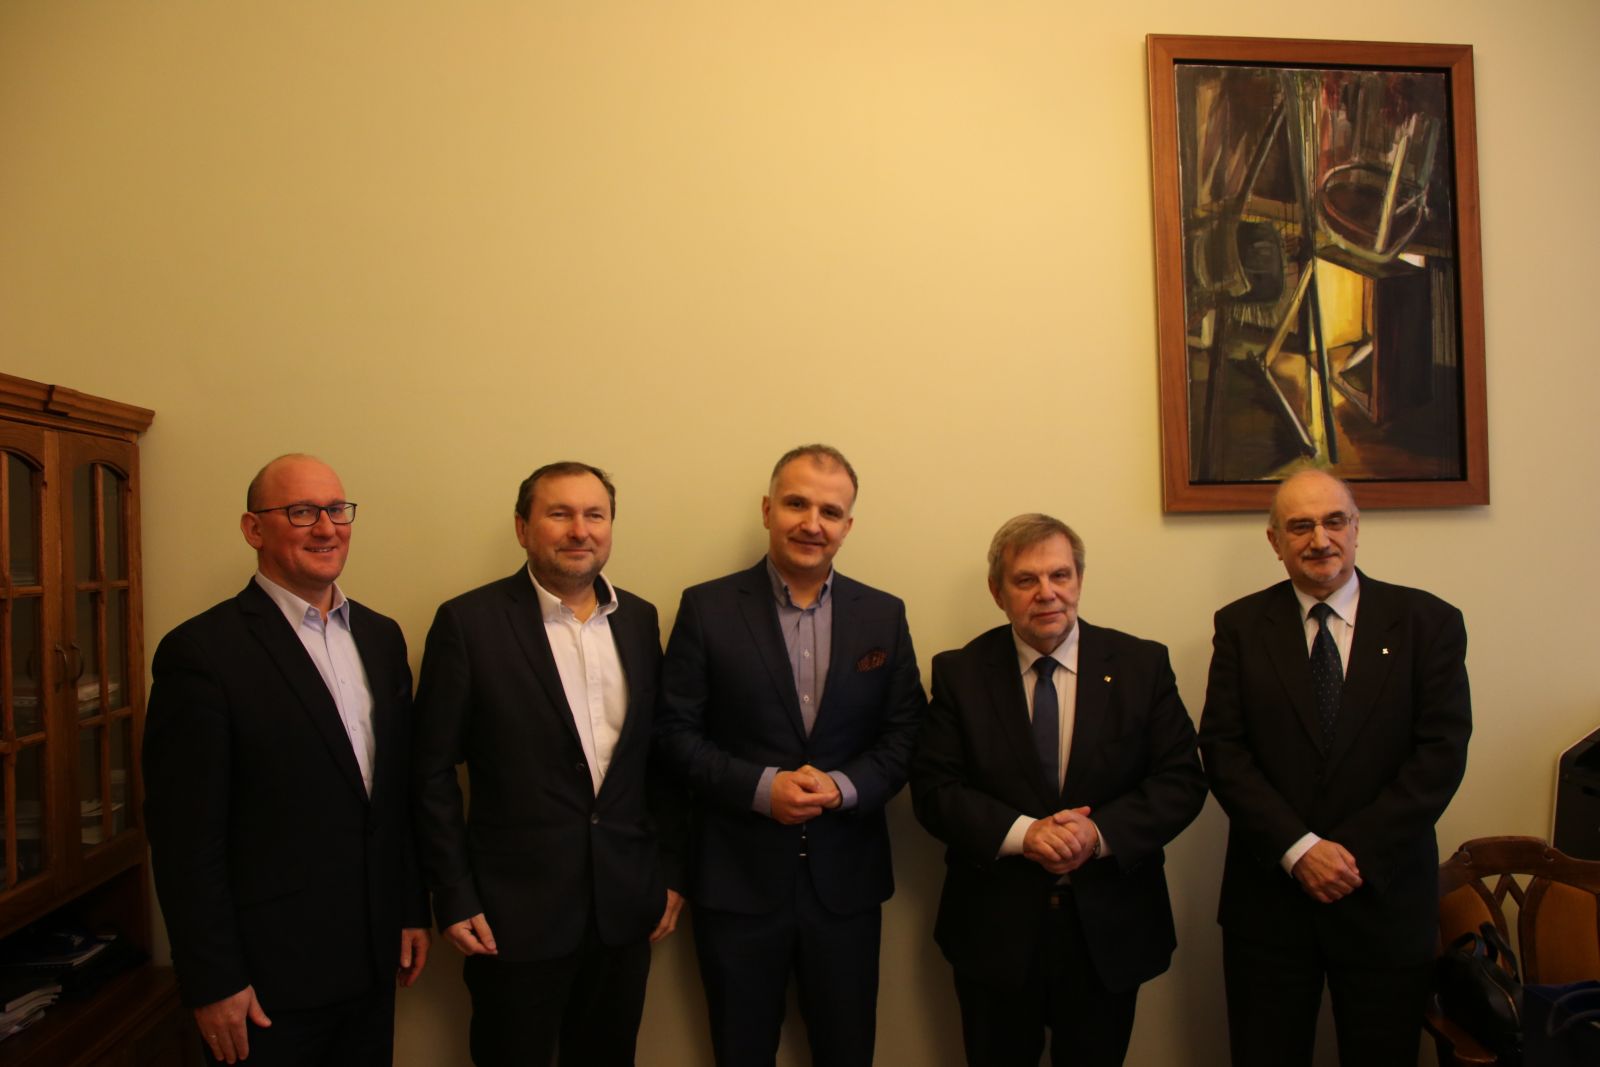 Podpisanie umowy o współpracy pomiędzy UAM a firmą Komputronik Biznes Sp. z o.o.